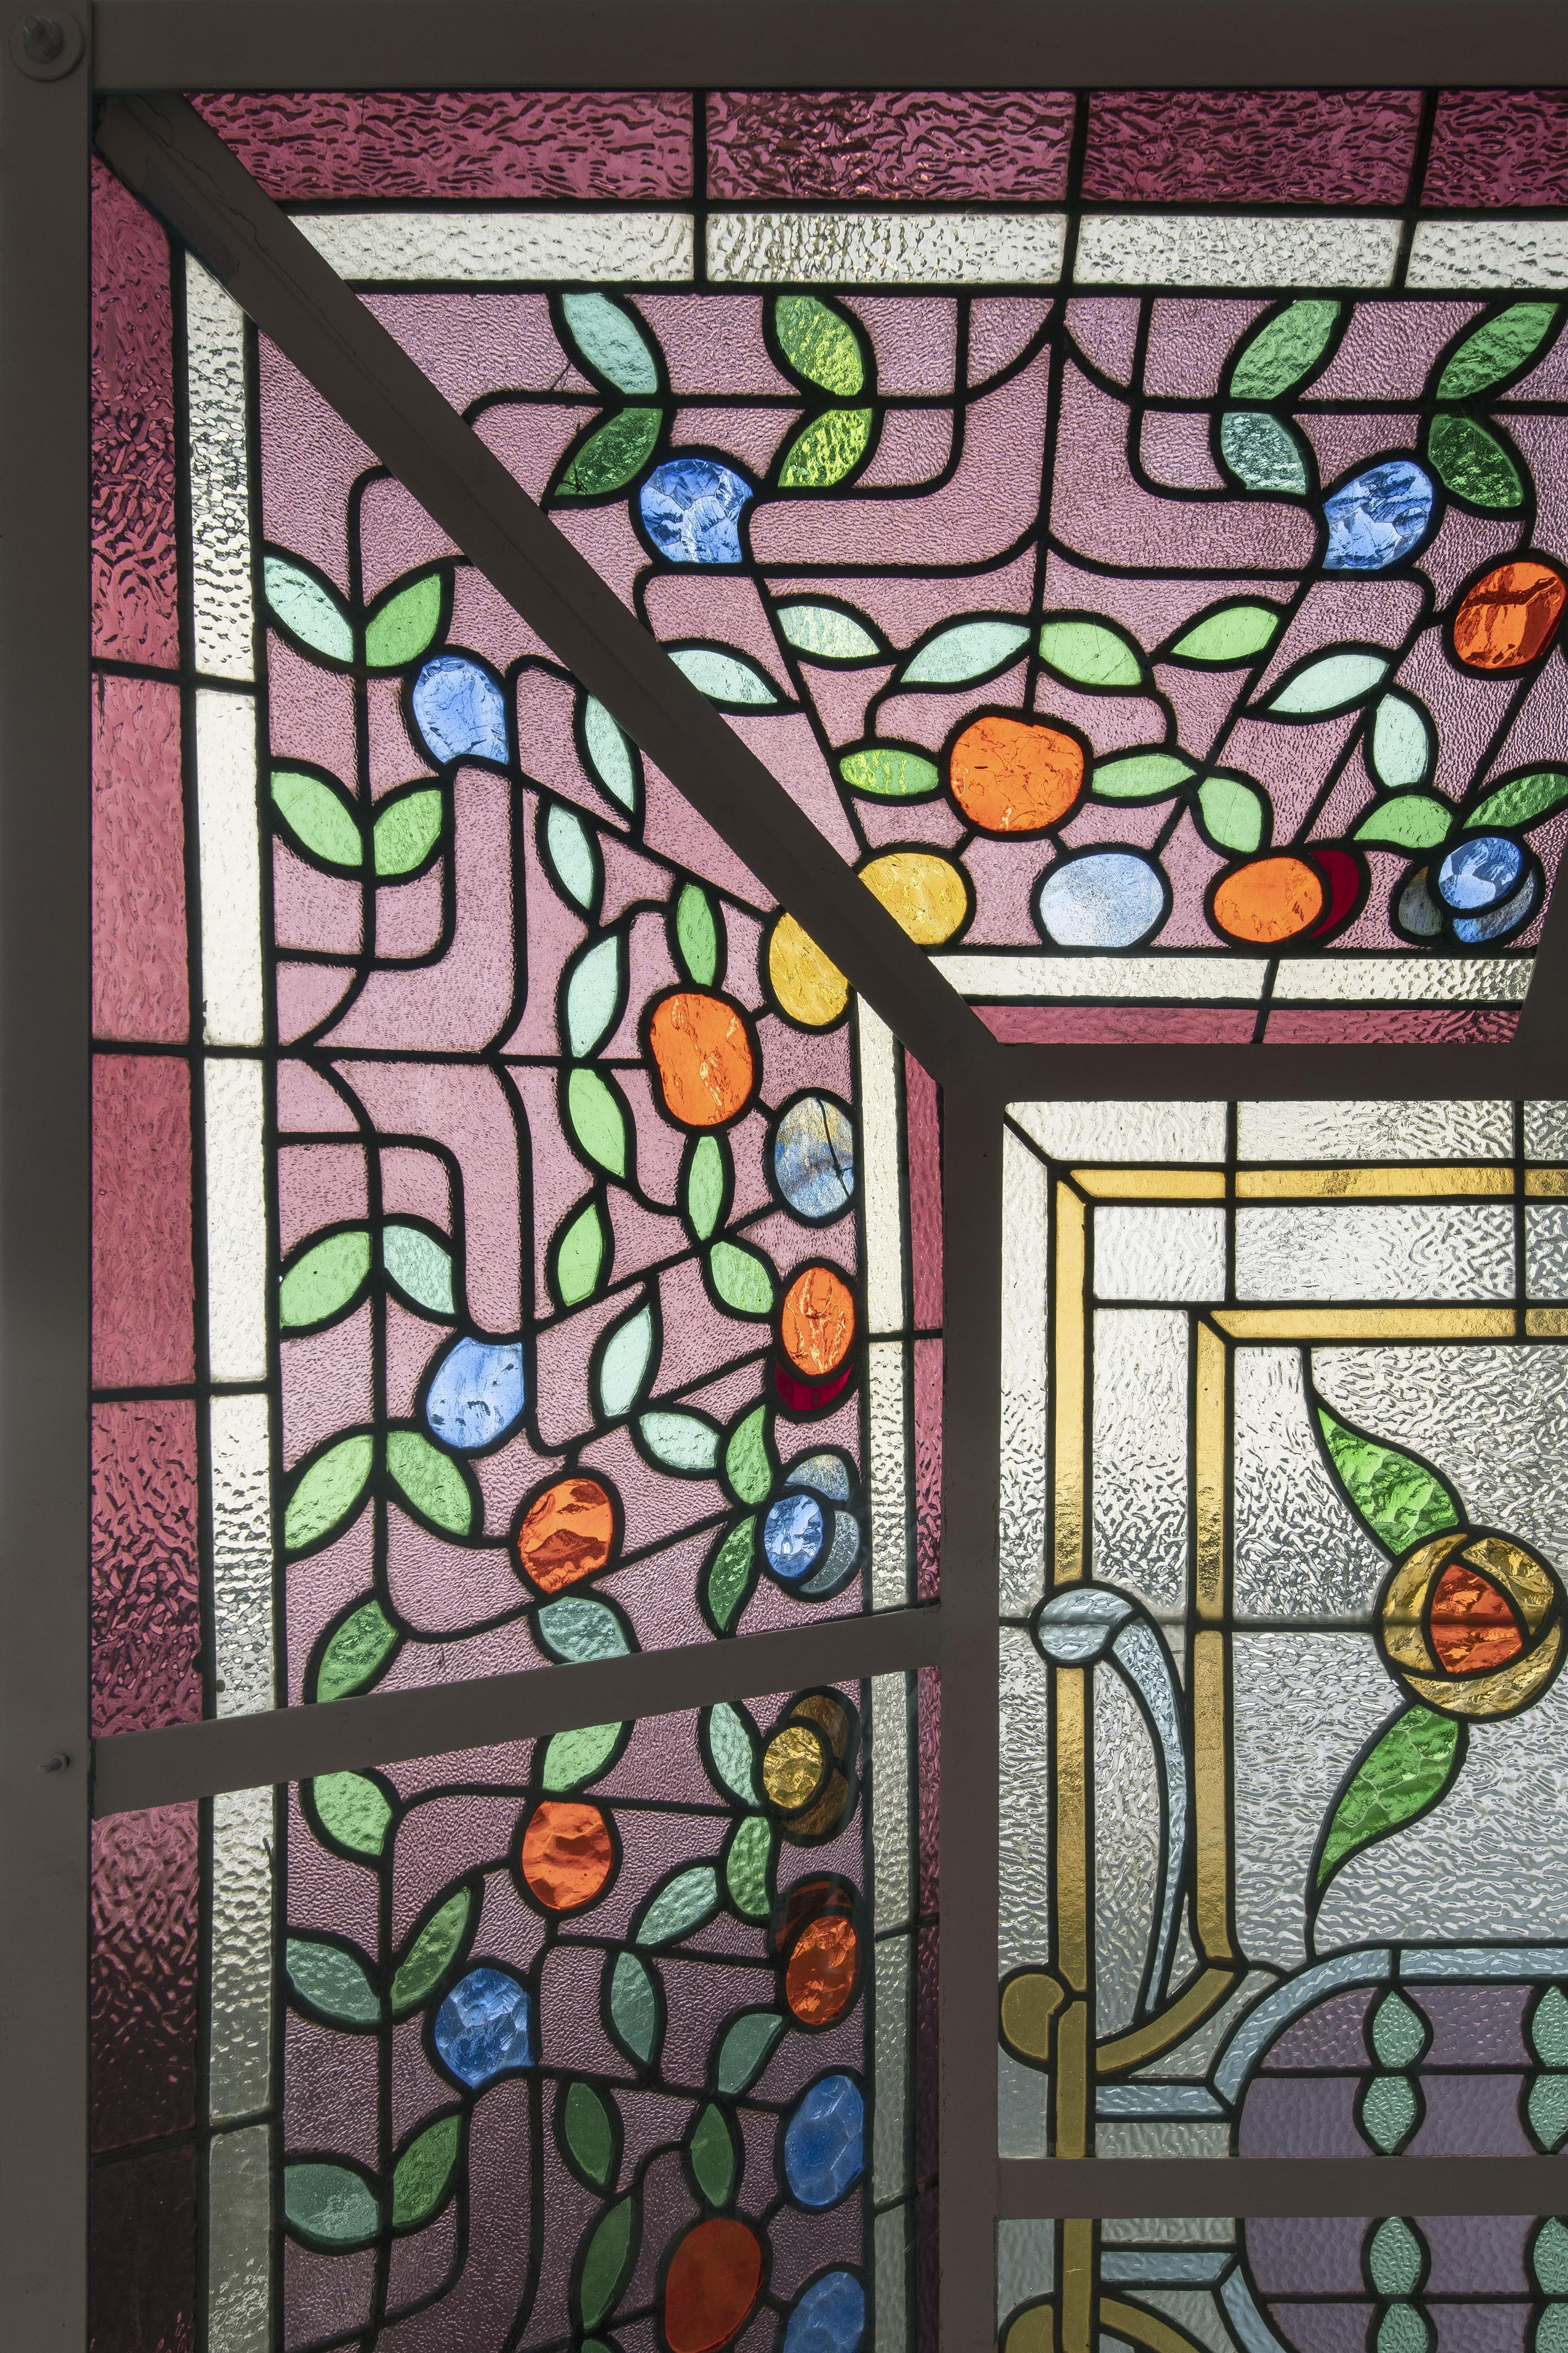 Belgisches Art Nouveau-Glasdach - image-3